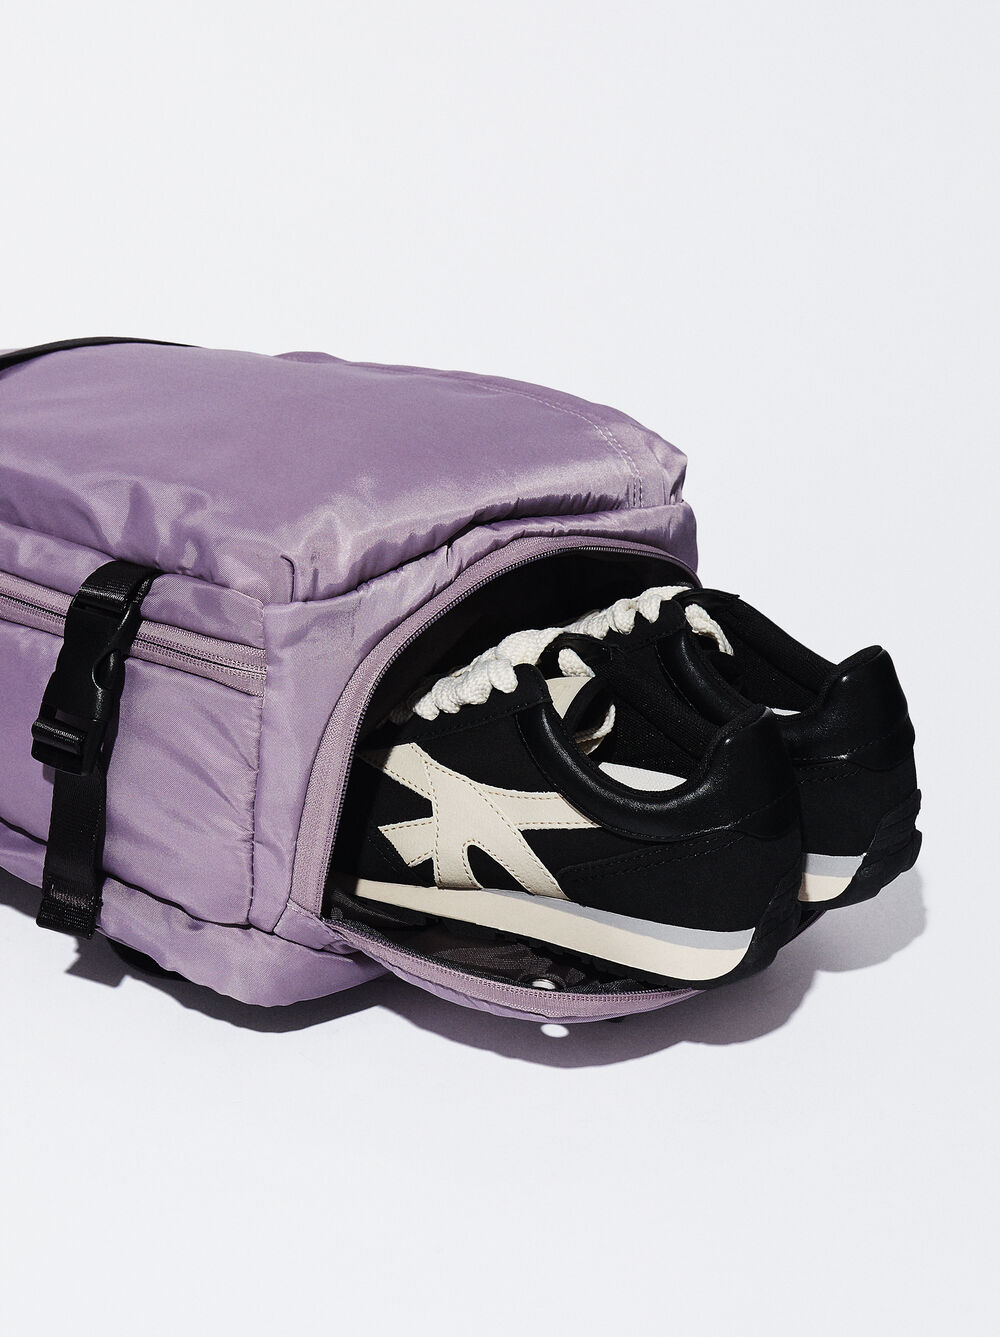 Nylon Cabin Backpack